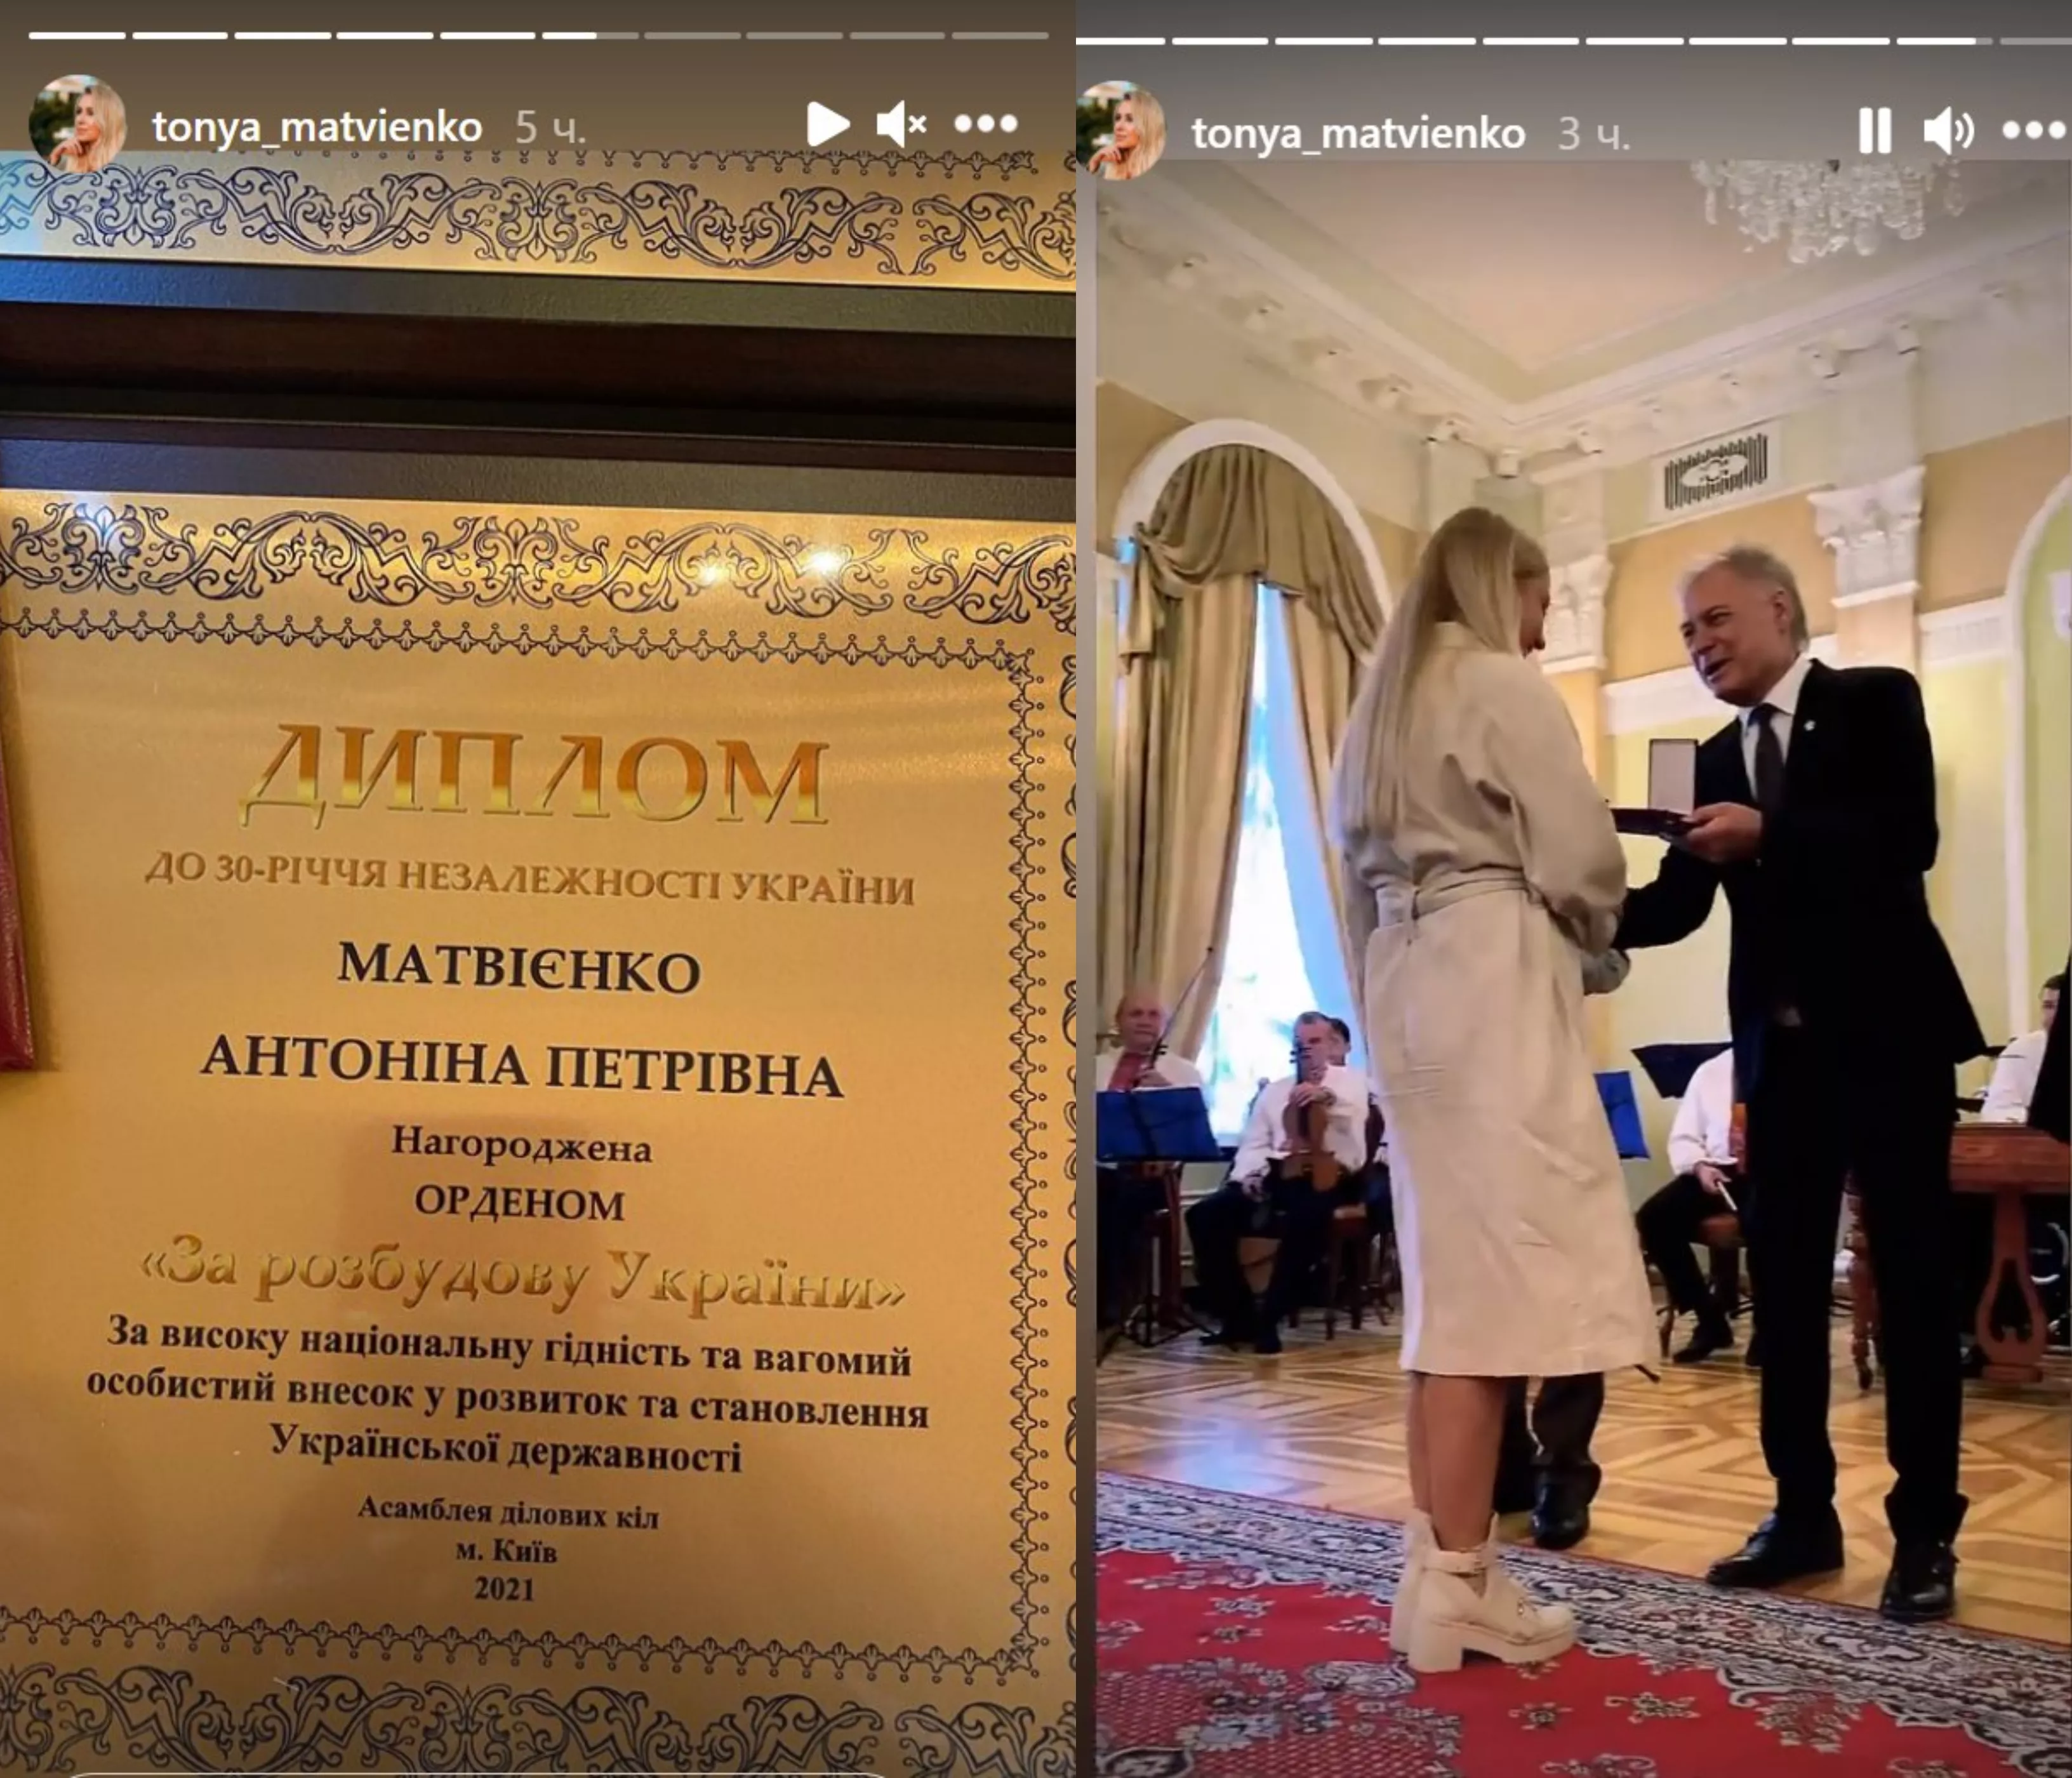 Тоня Матвієнко на церемонії нагородження в Маріїнському палаці